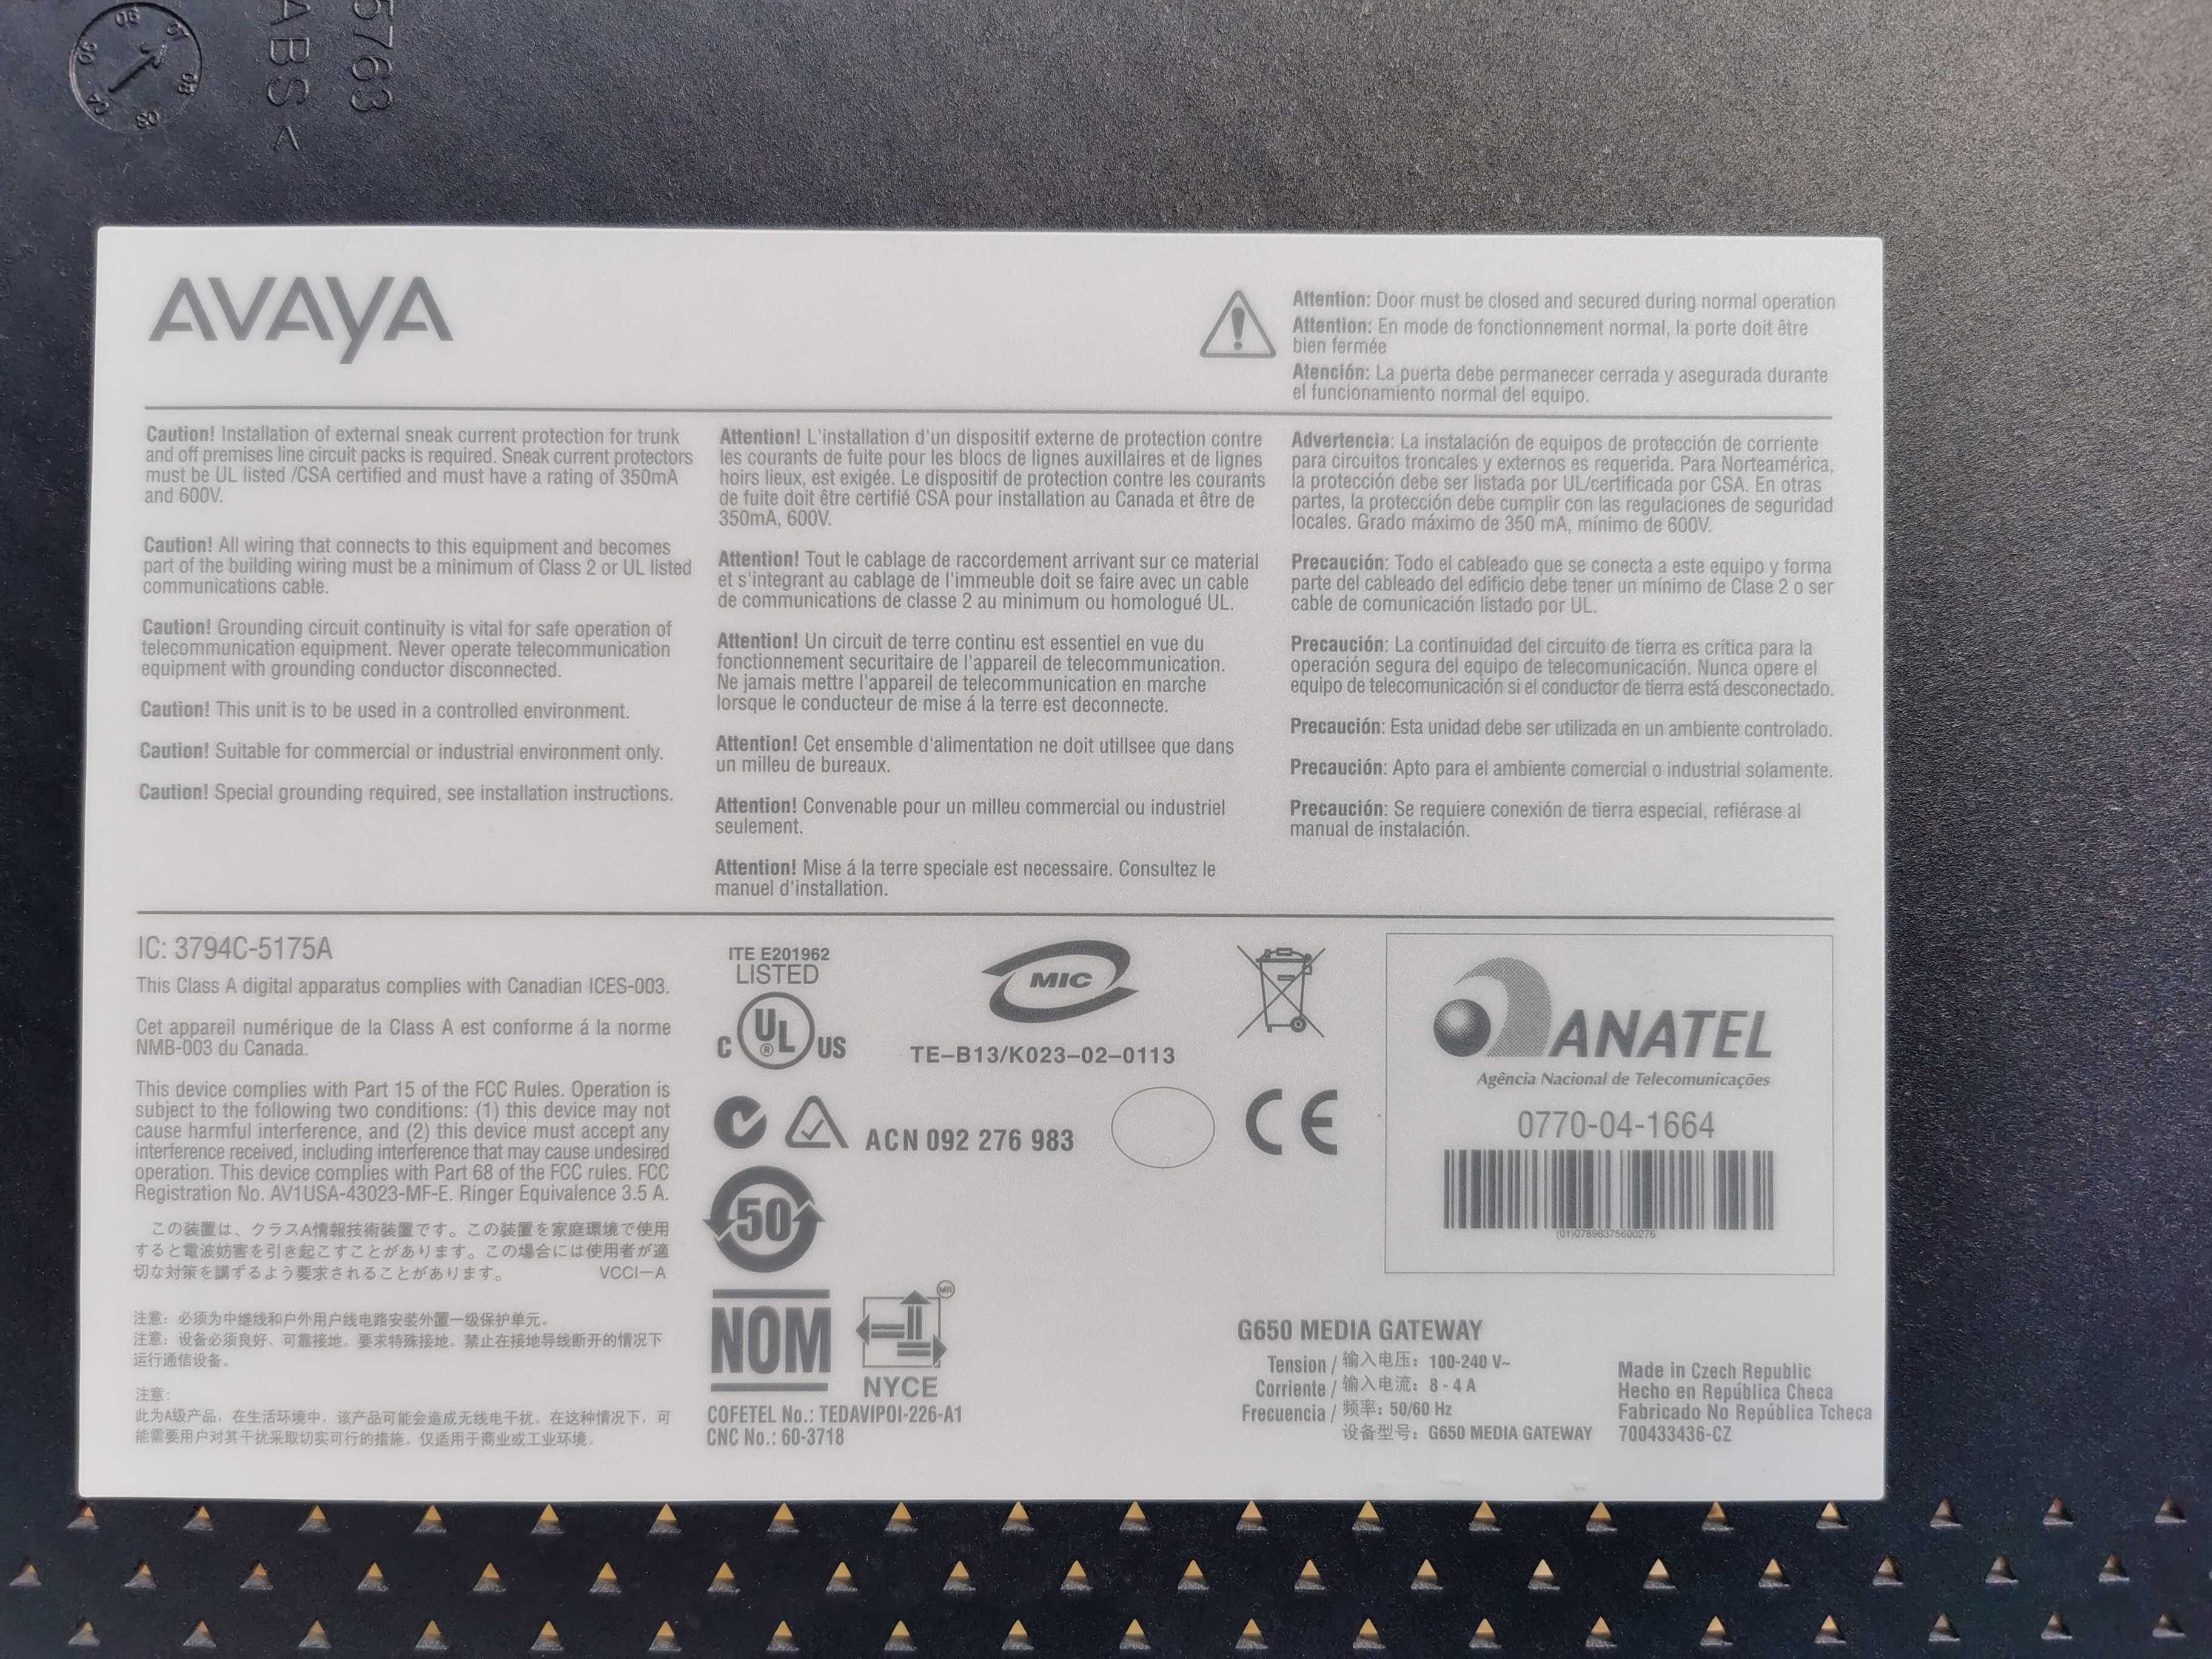 Шлюз AVAYA G650 Media Gateway(0770-04-1664)